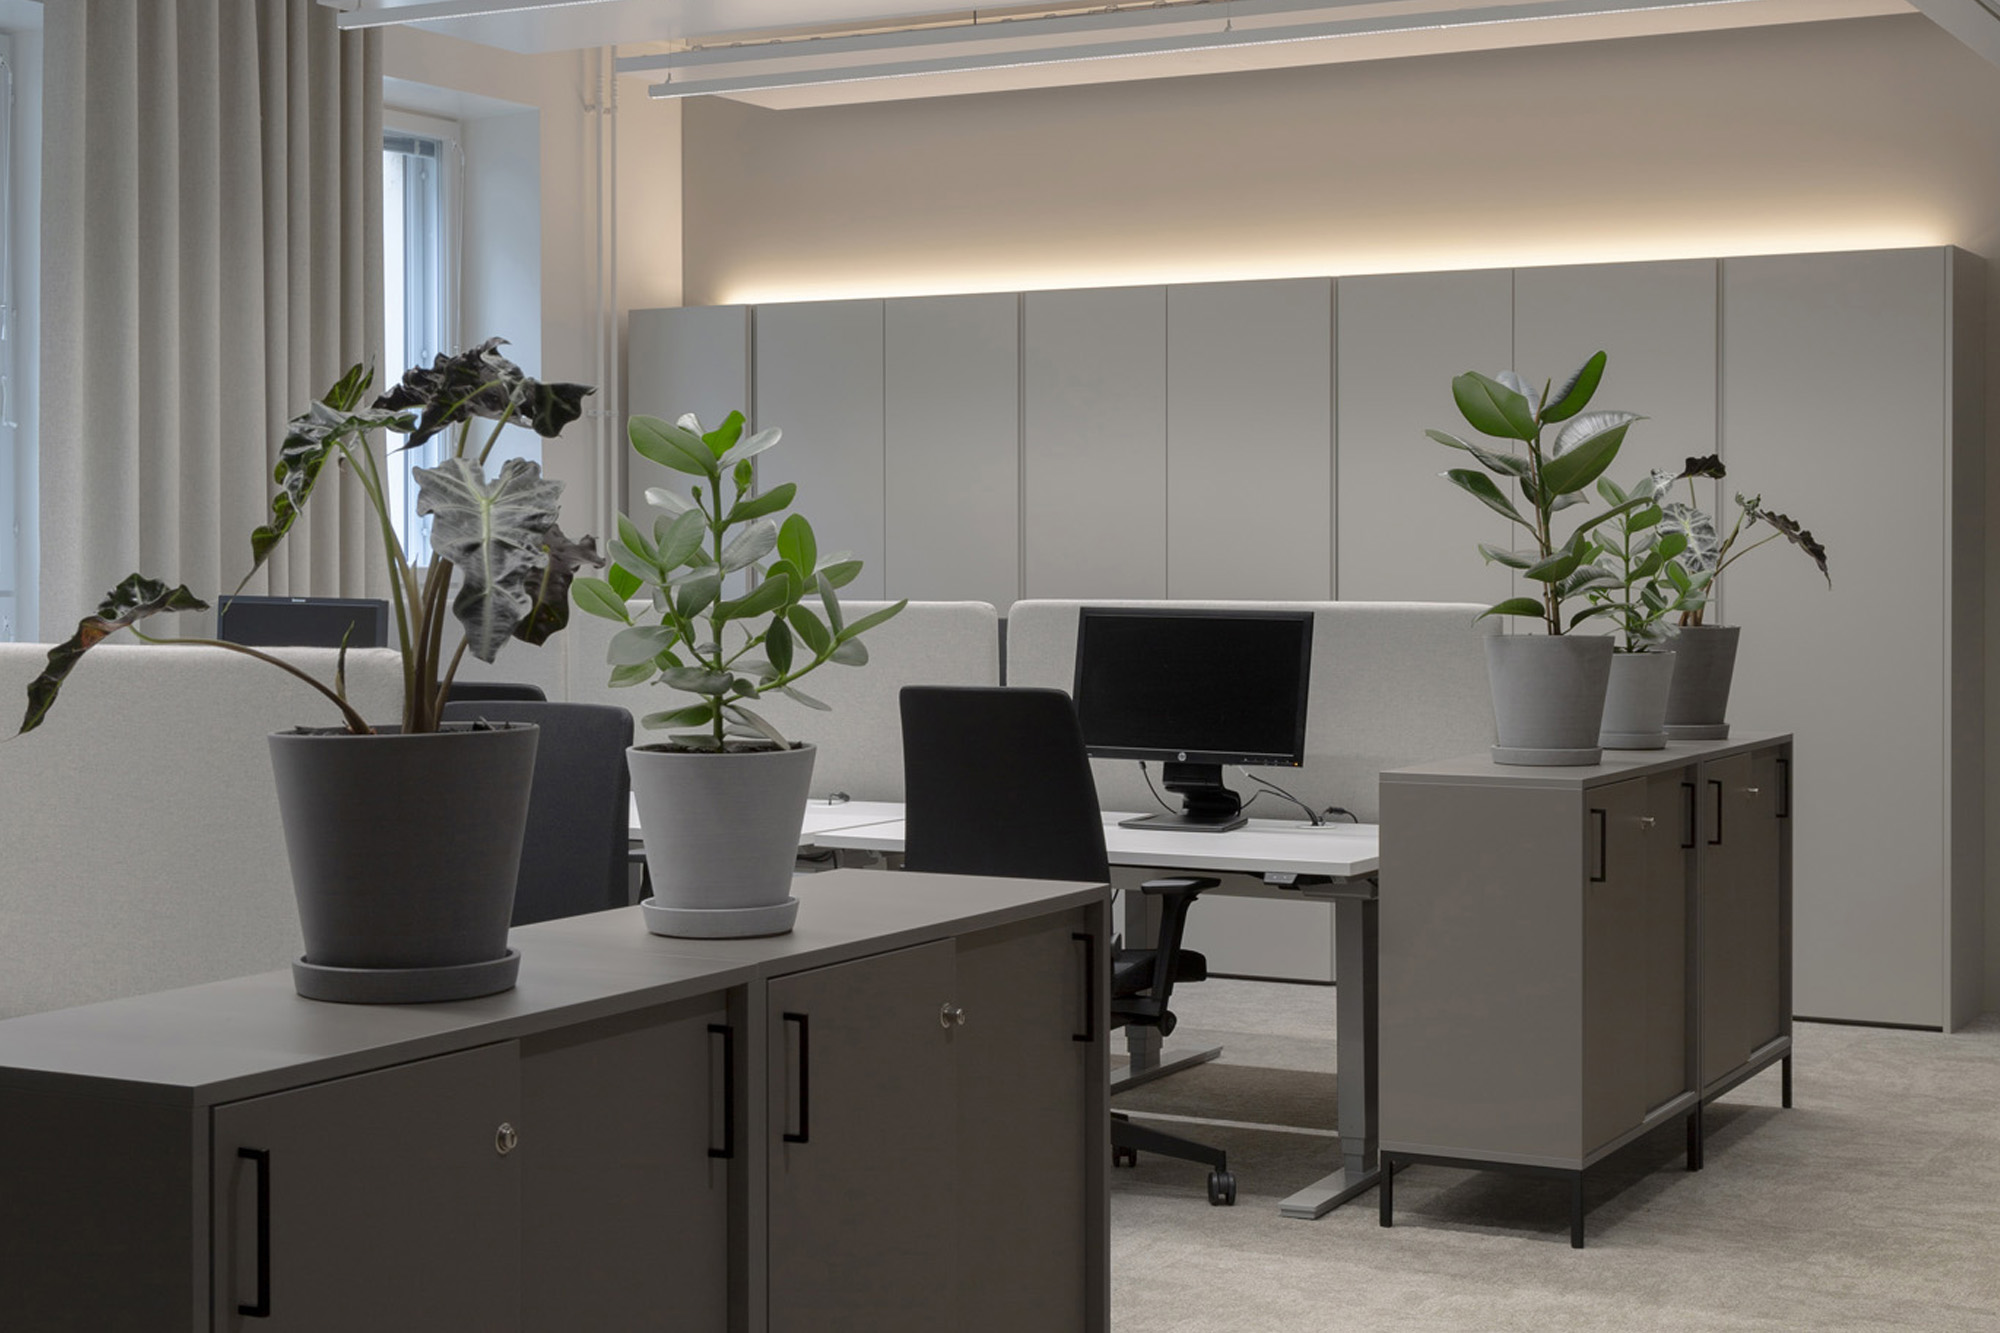 Premico office flexible open workspace